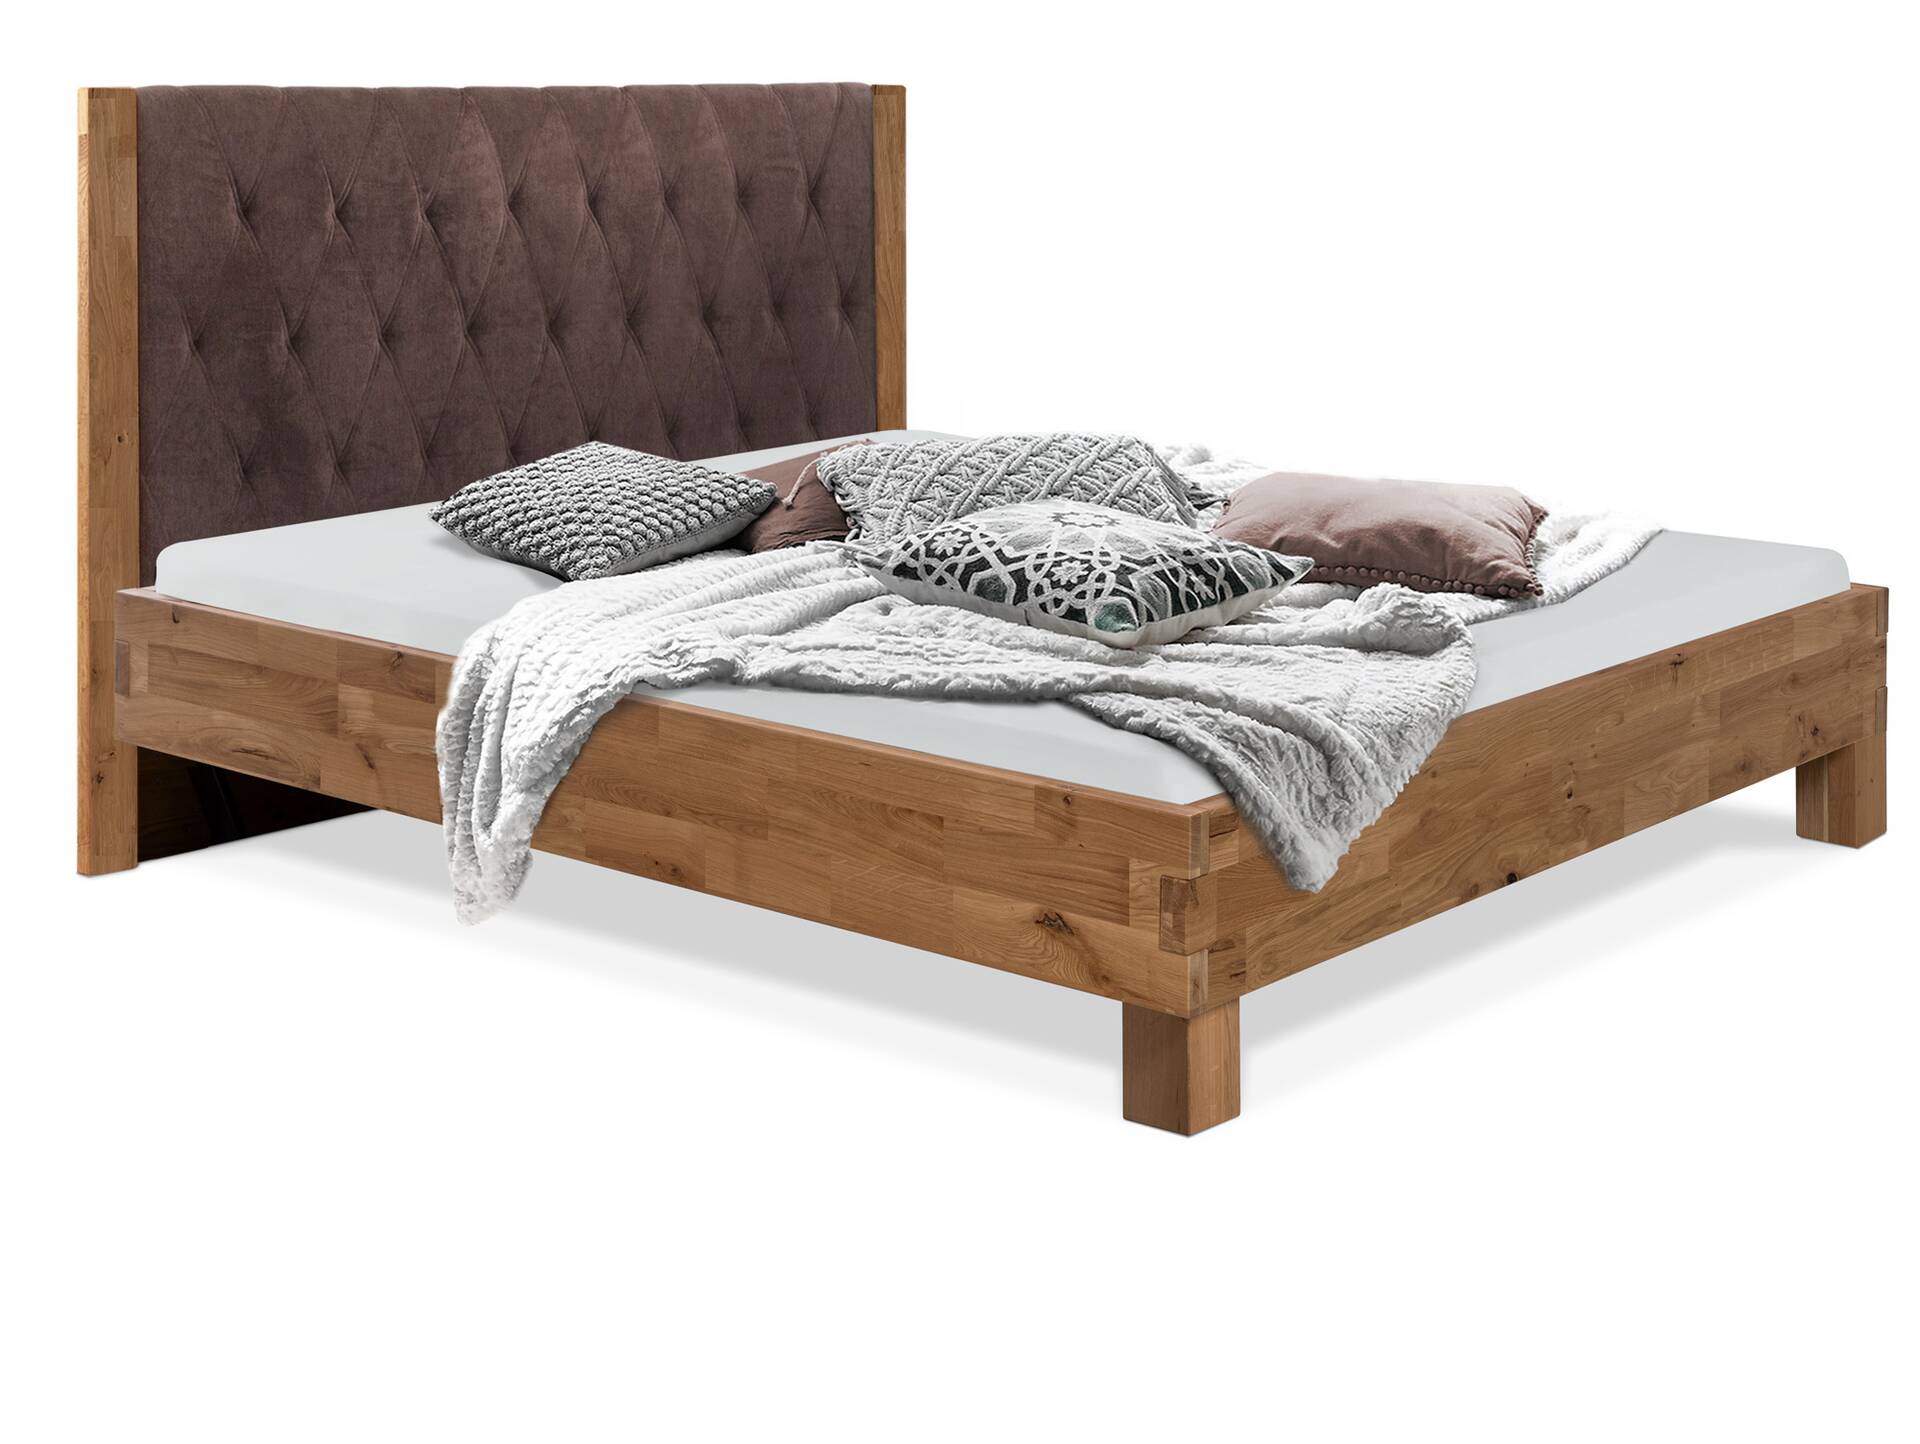 CORDINO 4-Fuß-Bett aus Eiche mit gestepptem Polster-Kopfteil, Material Massivholz 160 x 220 cm | Eiche unbehandelt | Stoff Braun | gebürstet